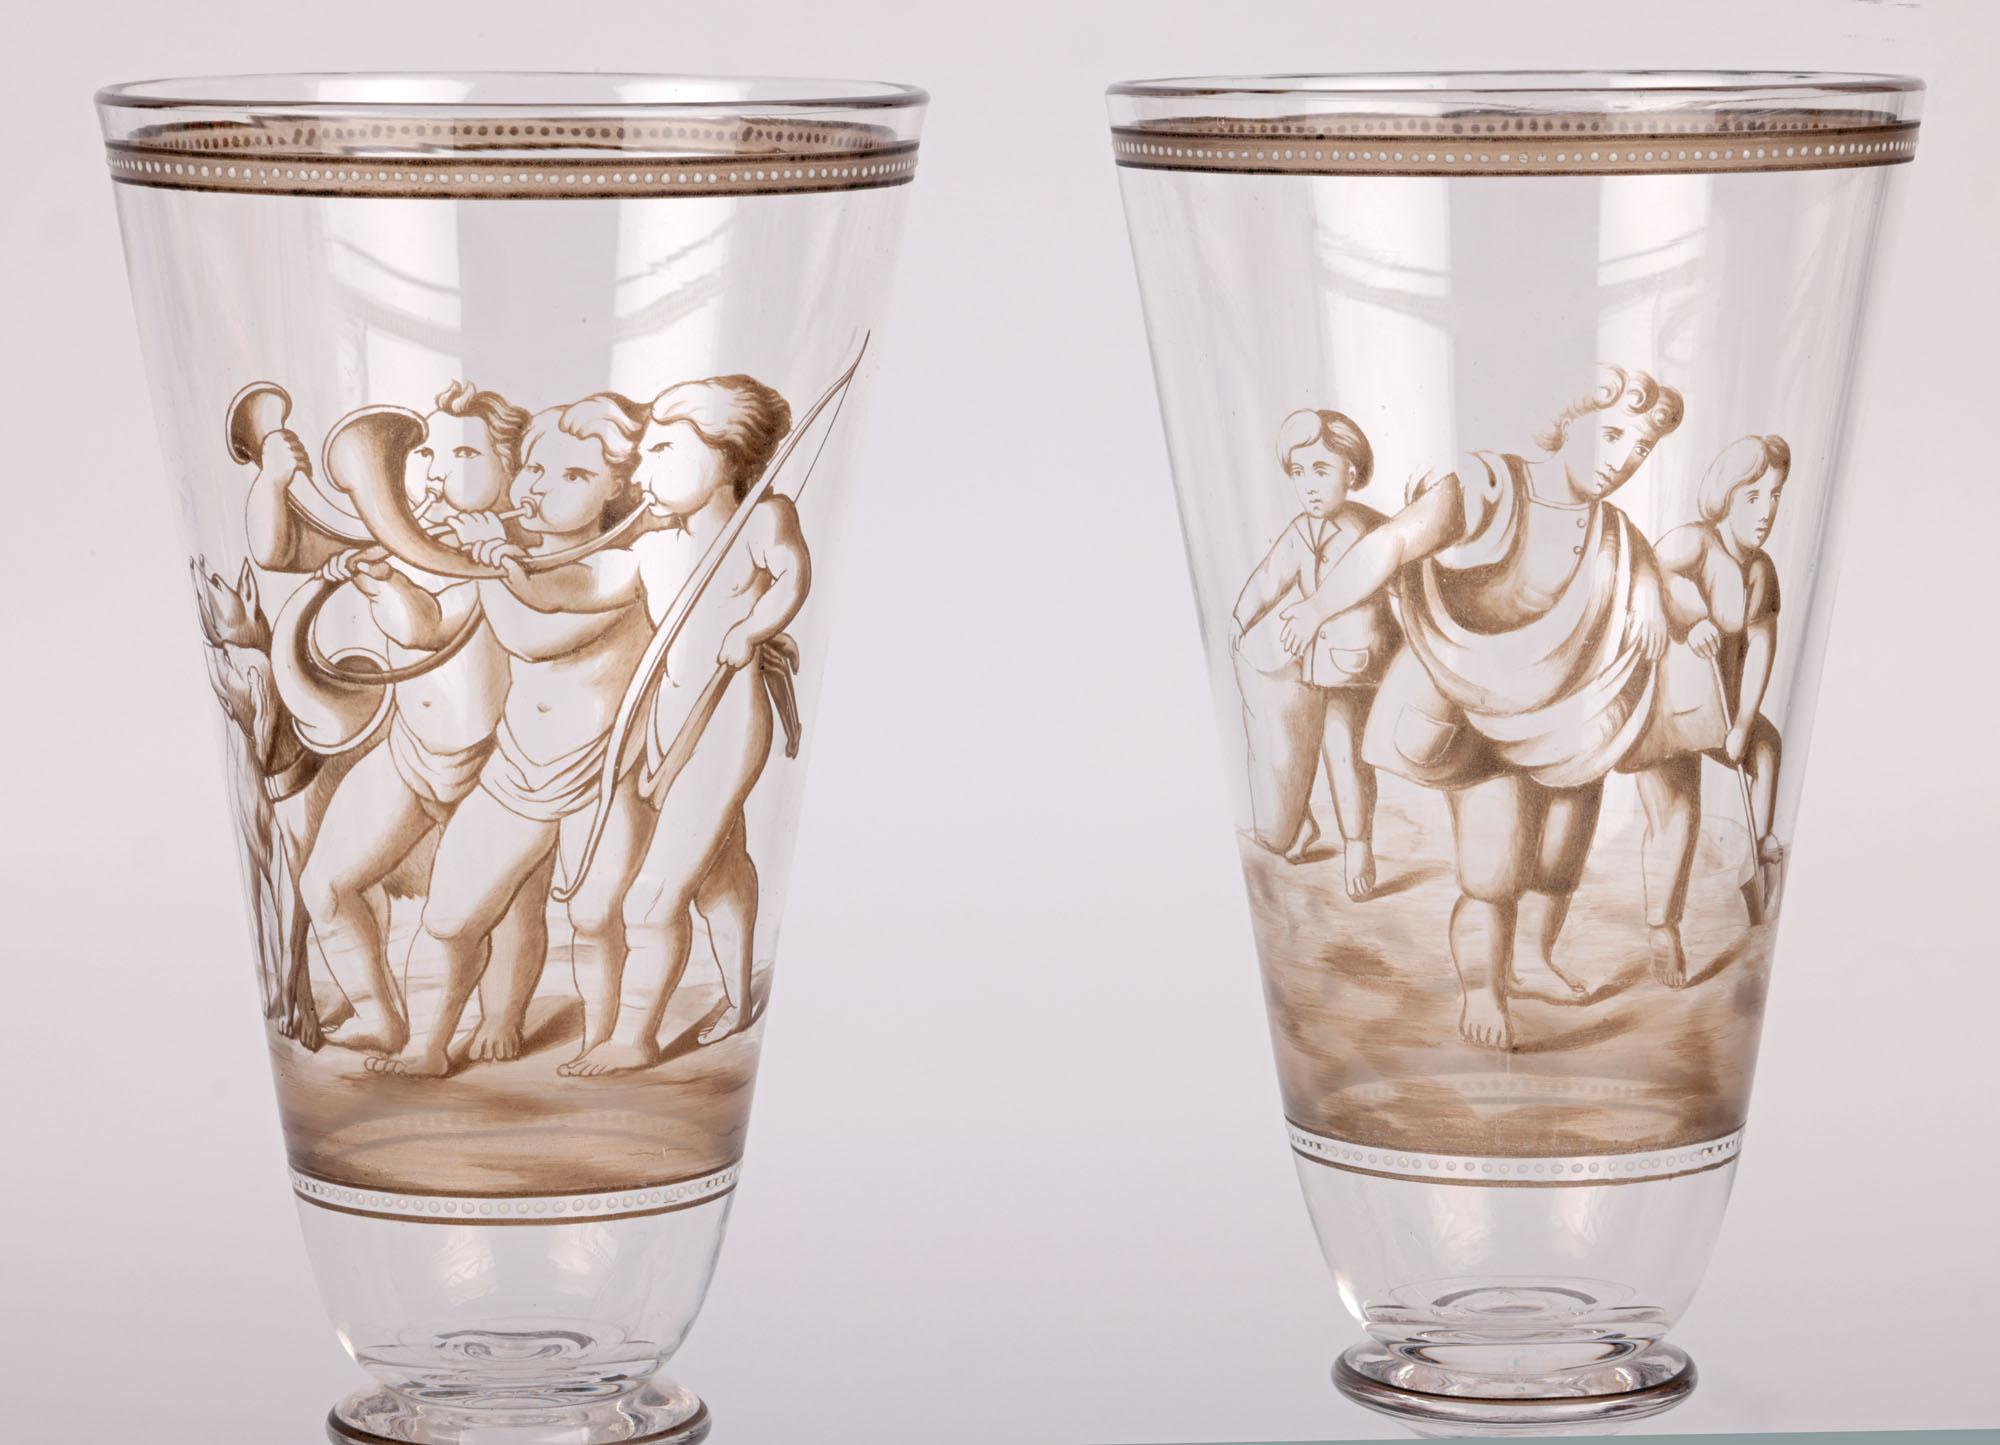 Une étonnante paire de gobelets en verre européens décorés d'un émaillage fin, attribués à Wiener Werkstatte et datant du début du 20e siècle. Les gobelets soufflés à la main reposent sur un pied piédestal rond et façonné, avec un rebord rabattu,